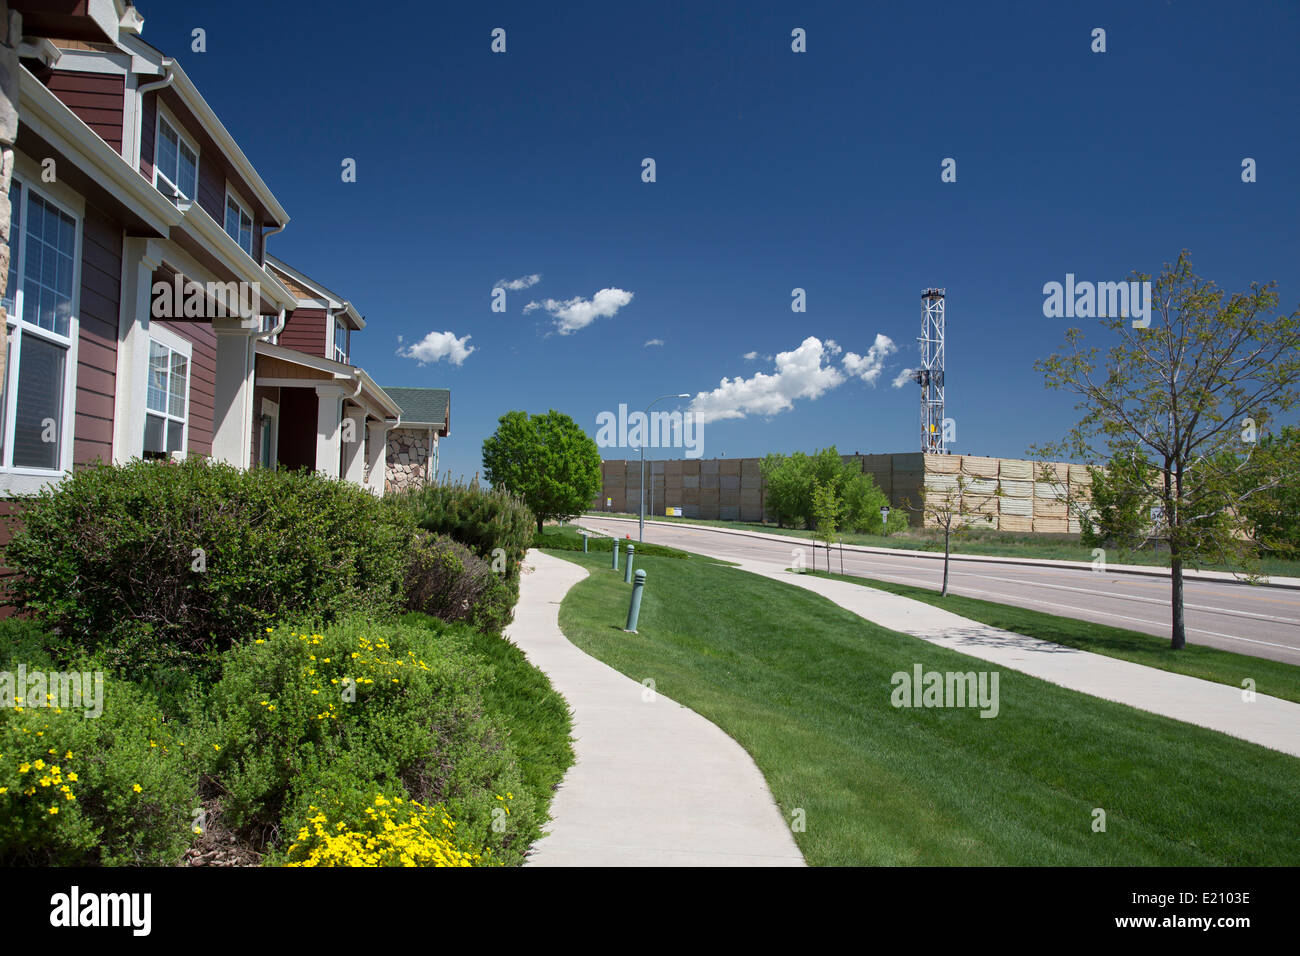 Greeley, Colorado - un olio impianto di perforazione in prossimità di abitazioni in un quartiere residenziale. Foto Stock